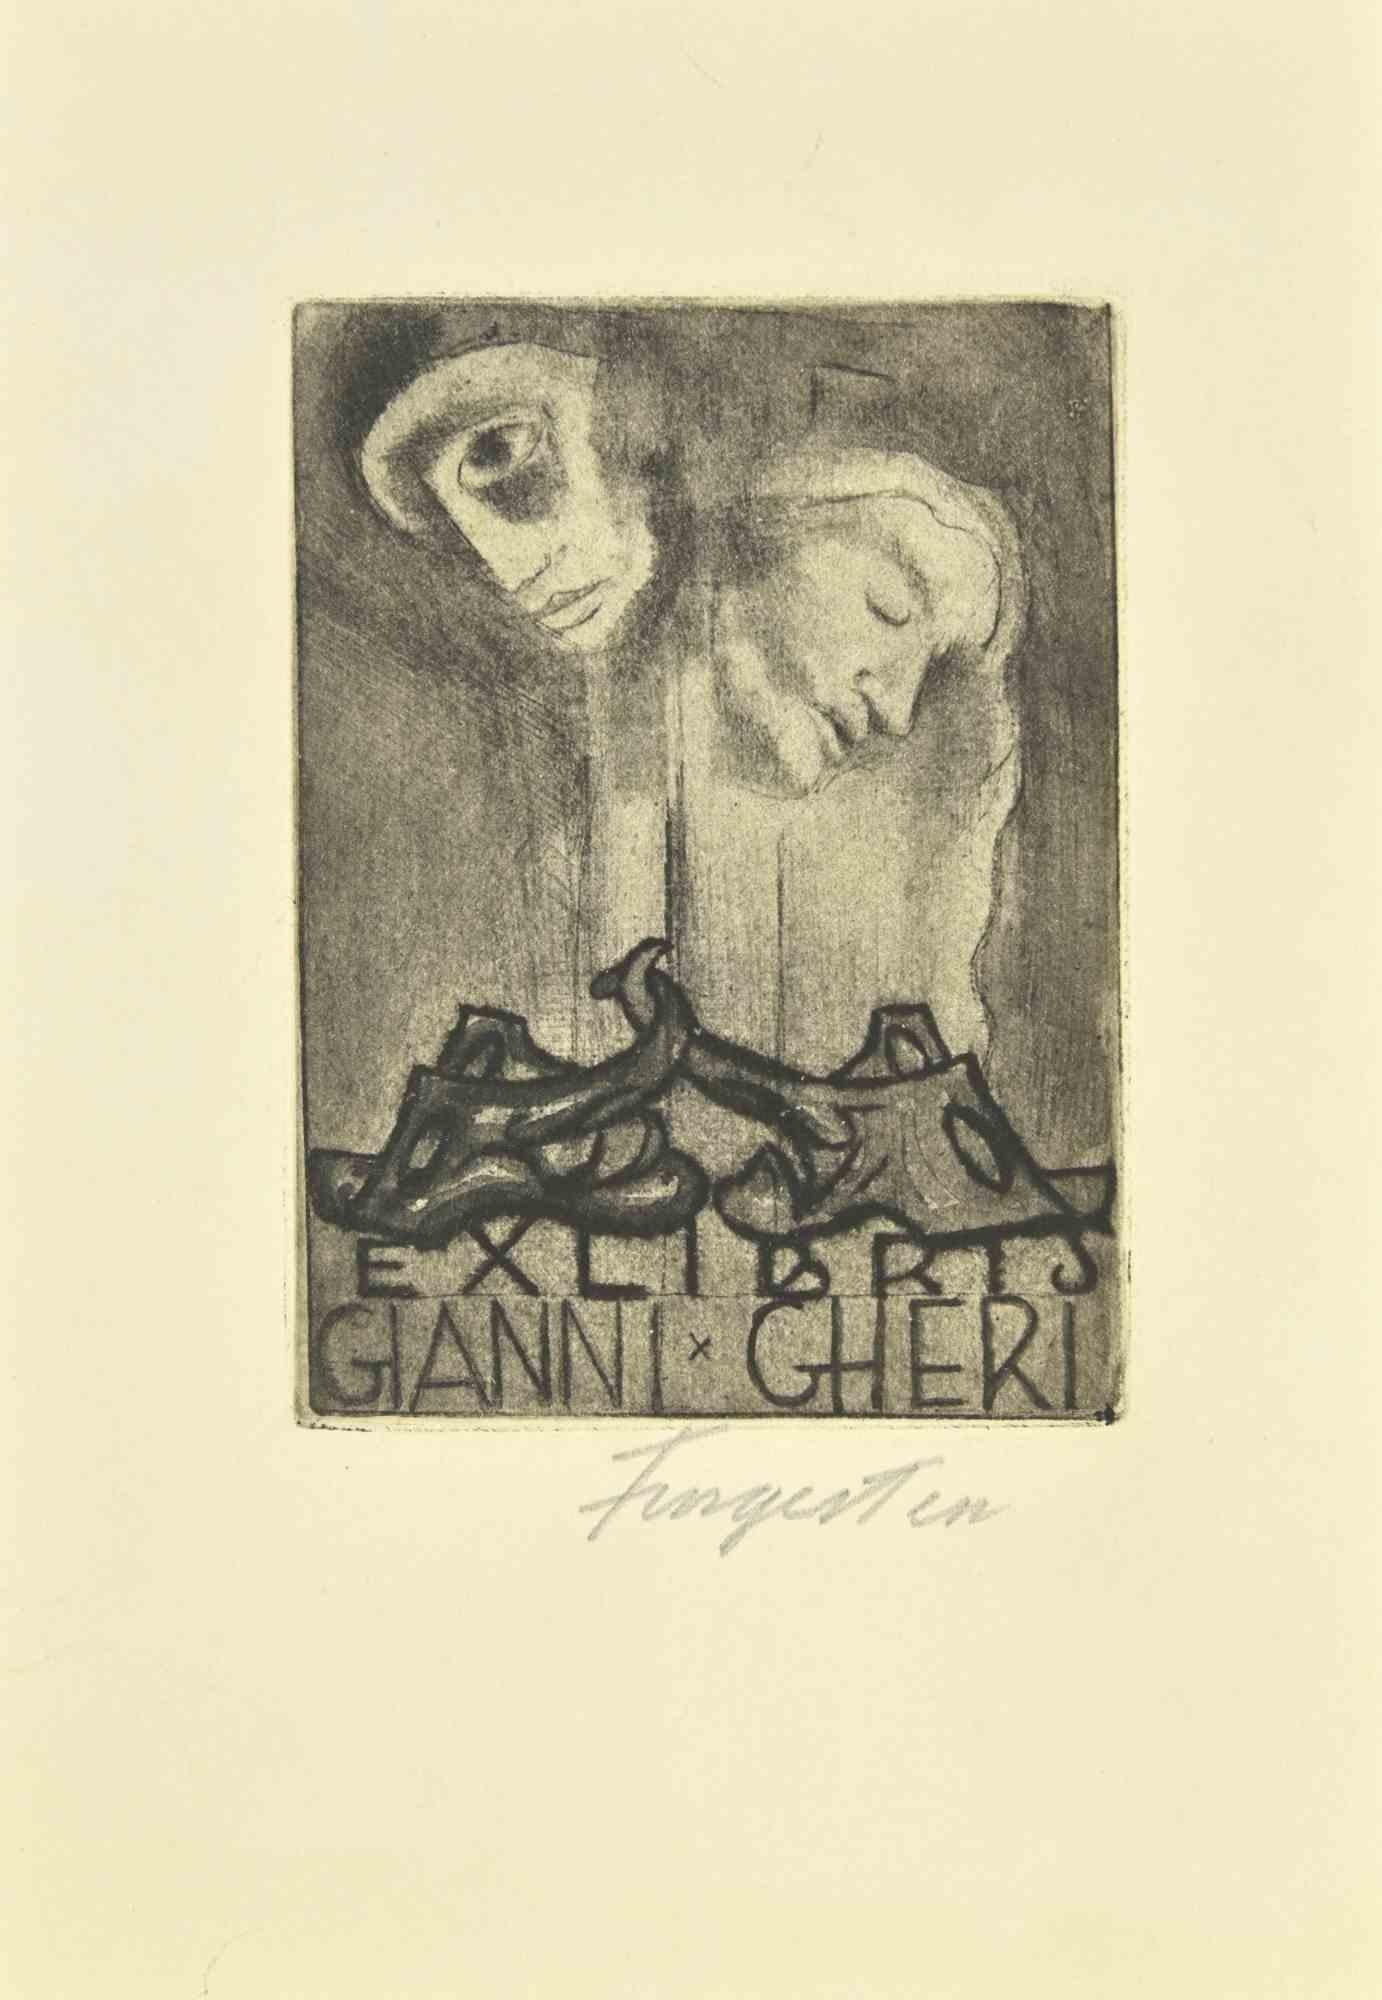 Ex Libris Gianni Gheri - Etching by Michel Fingesten - 1930s